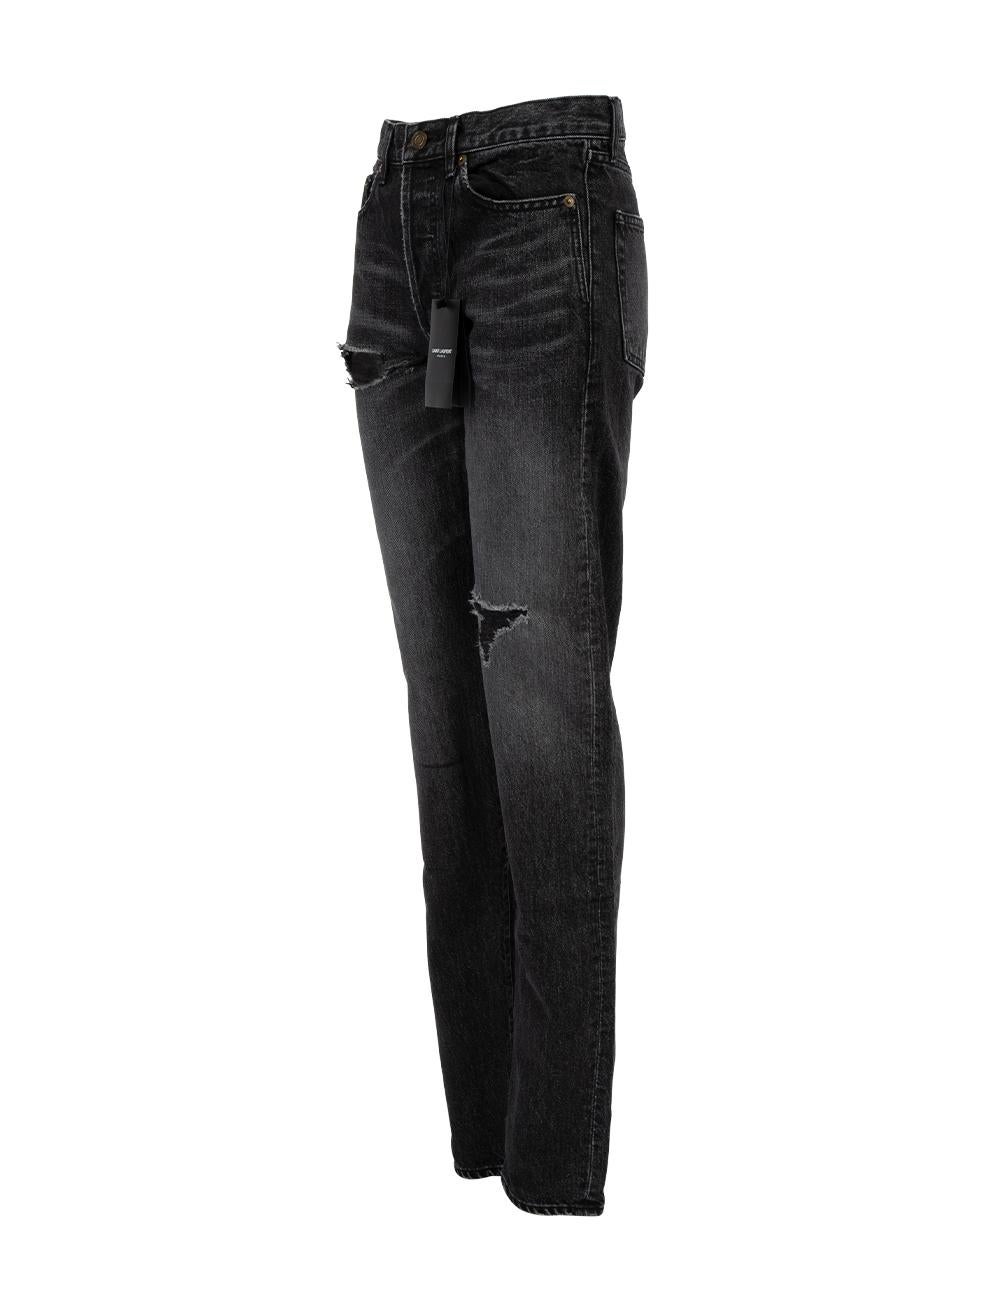 Saint Laurent Women's 2018 Distressed Slim Fit Jeans 1